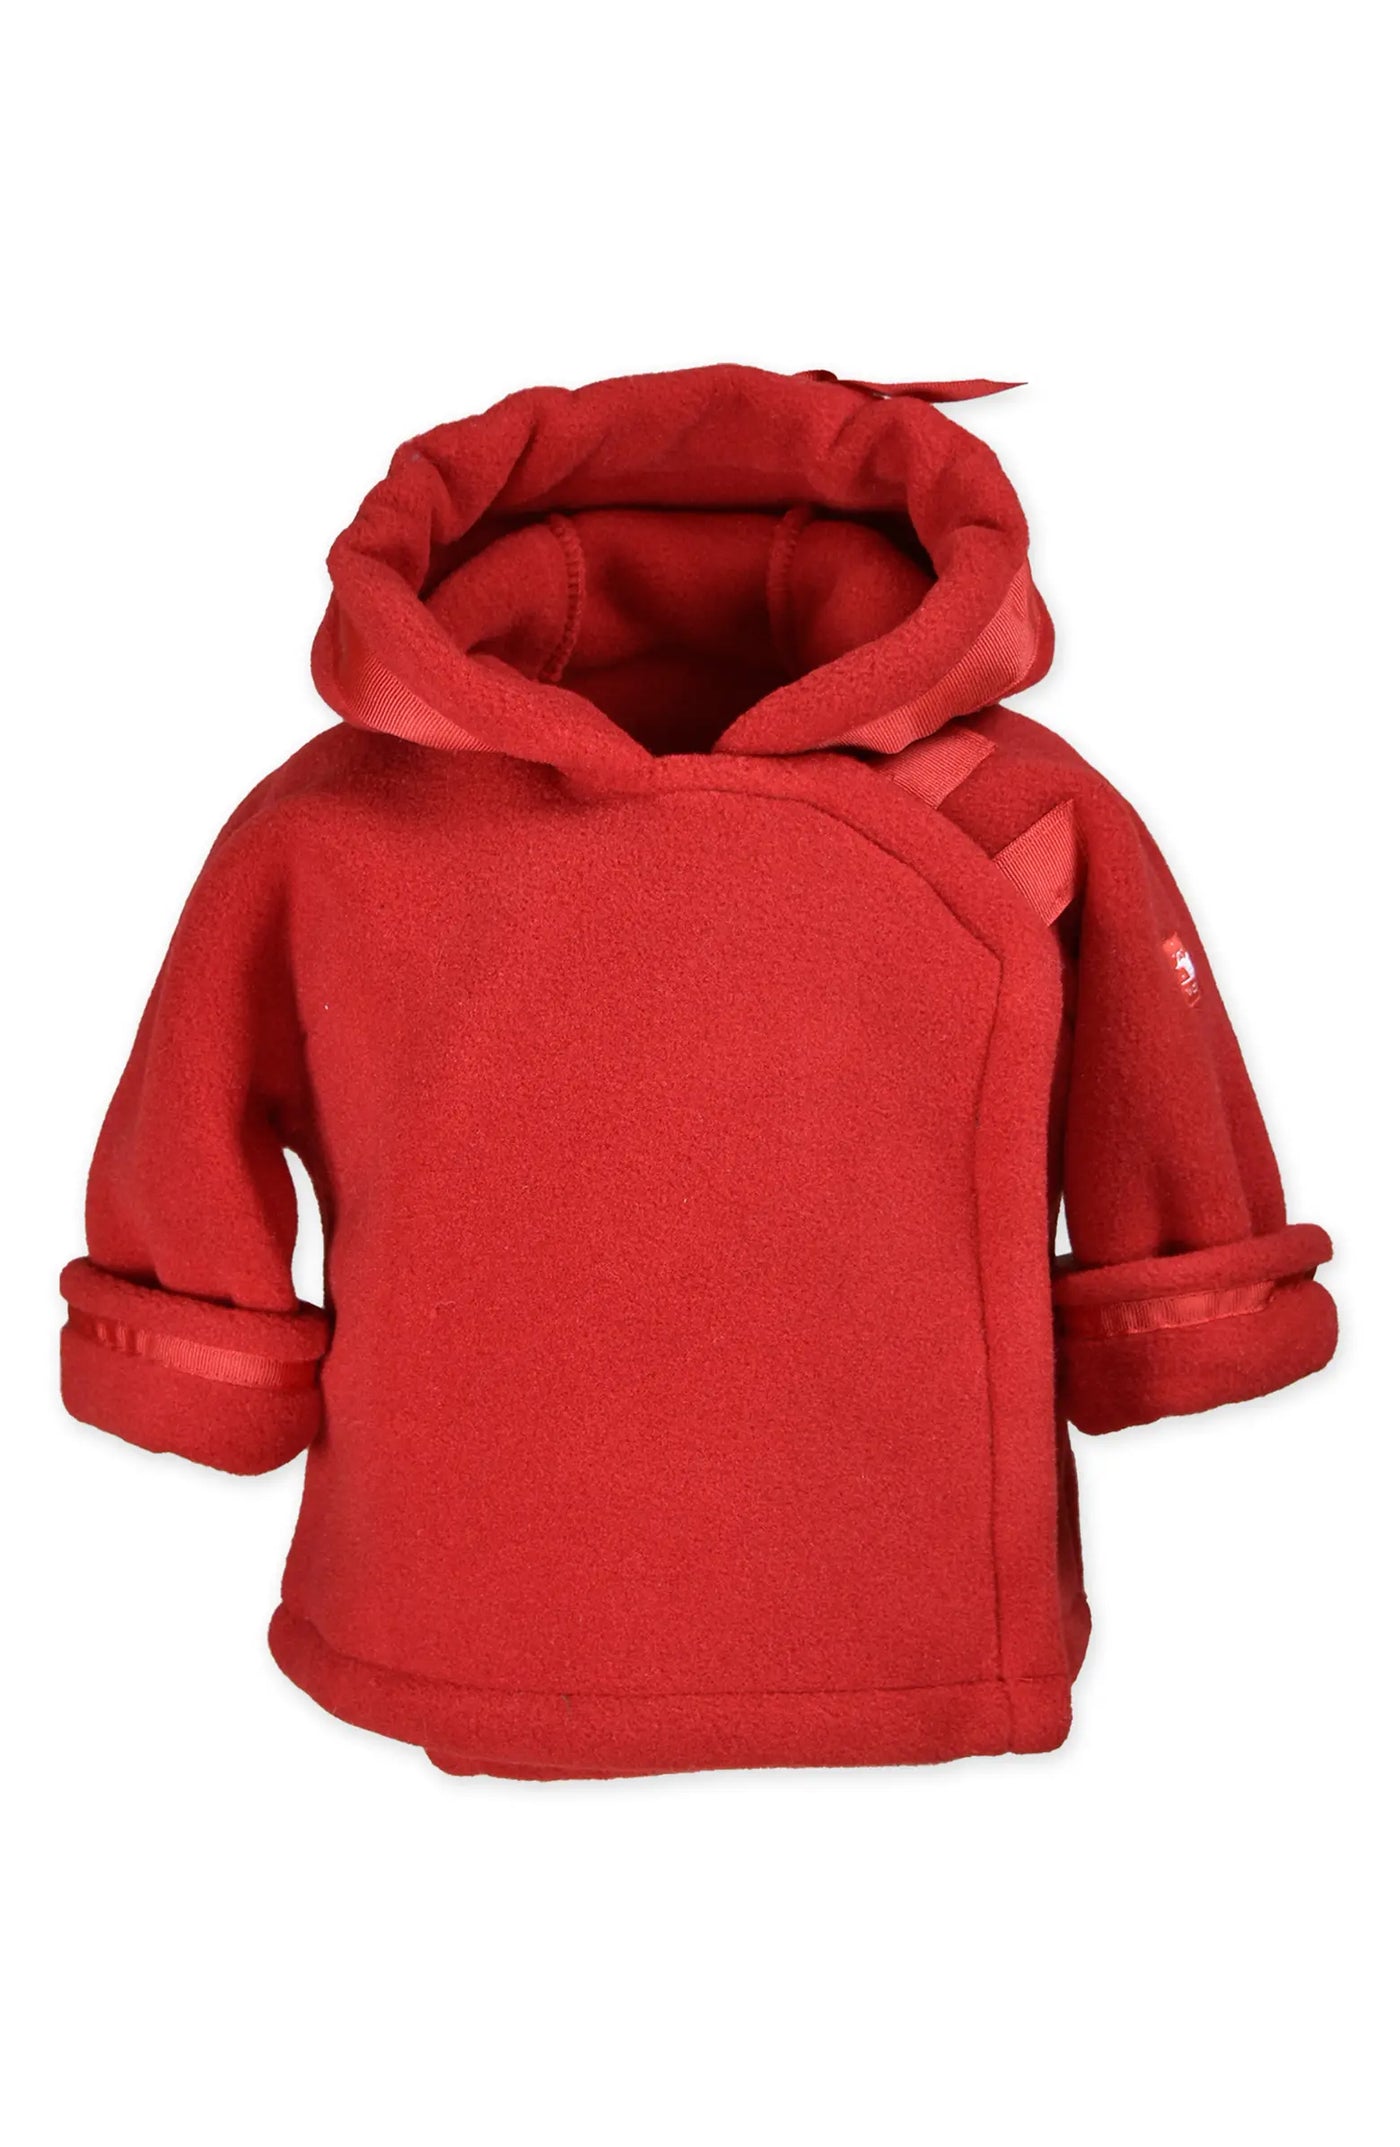 Widgeon Coats Red